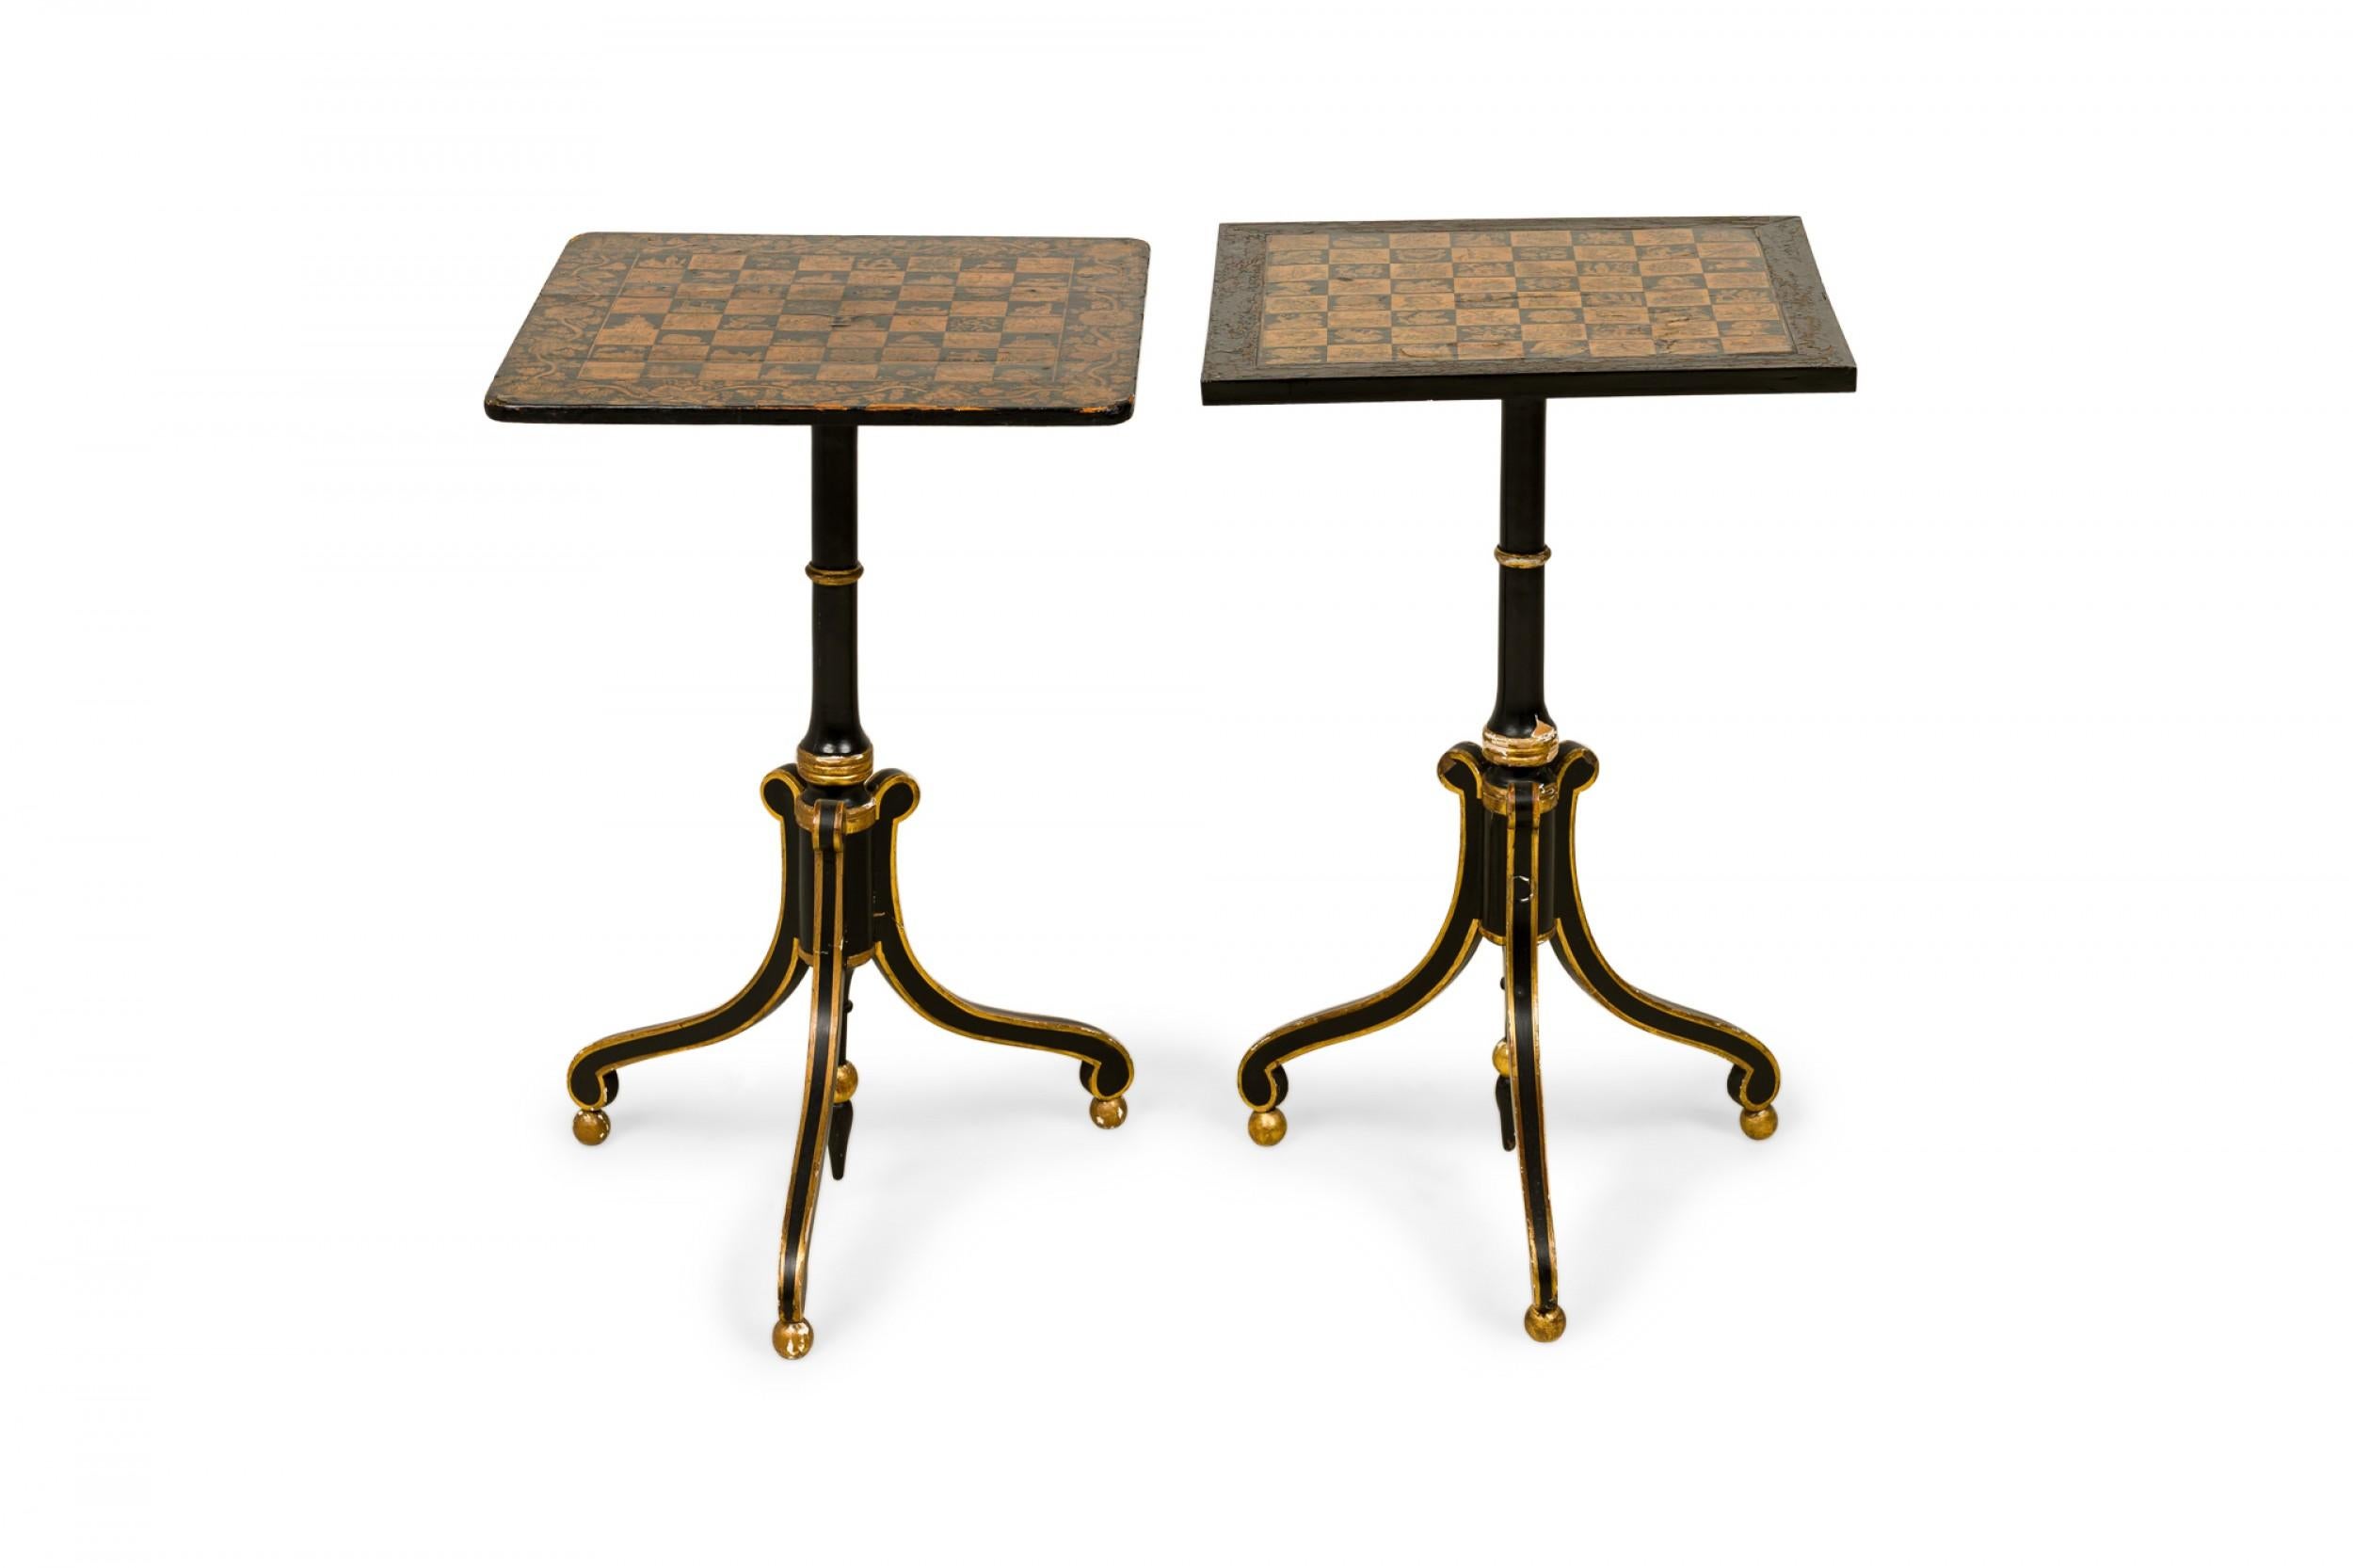 Paire de tables d'échecs similaires de style Régence anglais, avec des plateaux en bois carrés présentant des échiquiers peints en noir et or avec des motifs élaborés dans chaque carré, entourés d'une bordure feuillagée, reposant sur des bases à